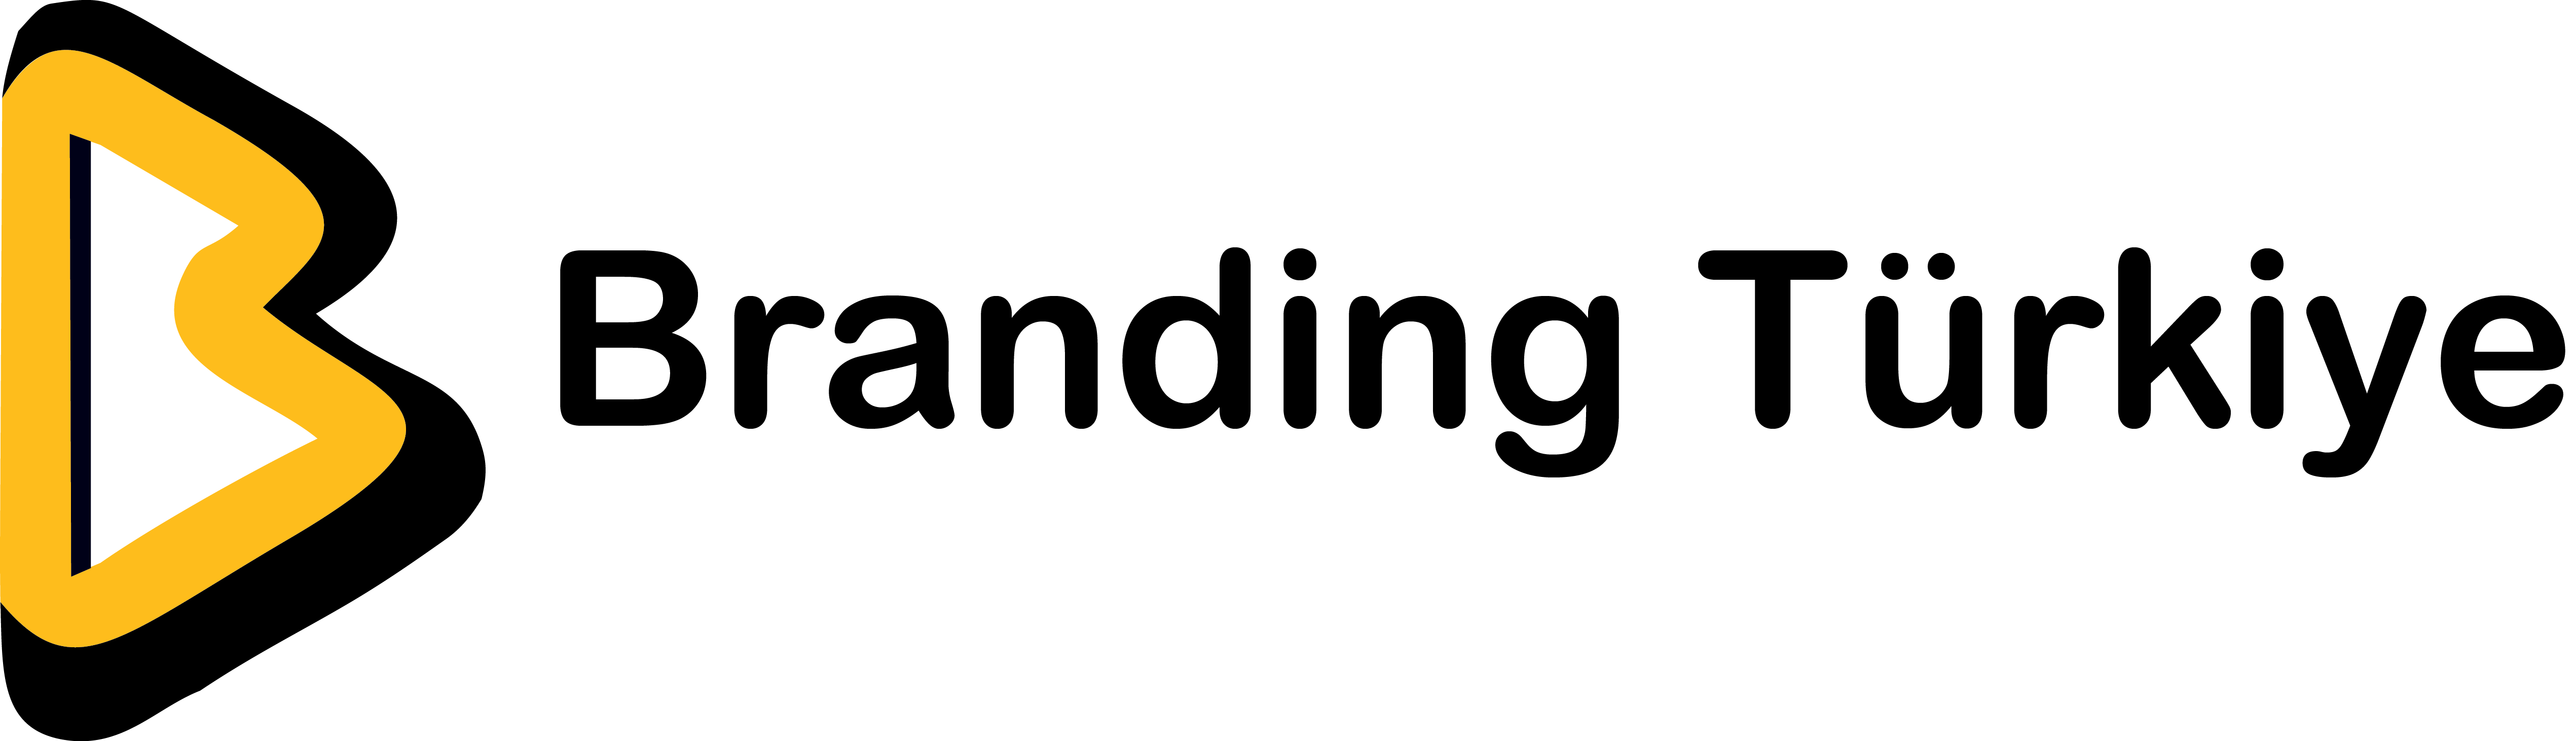 branding-turkiye-logo-png